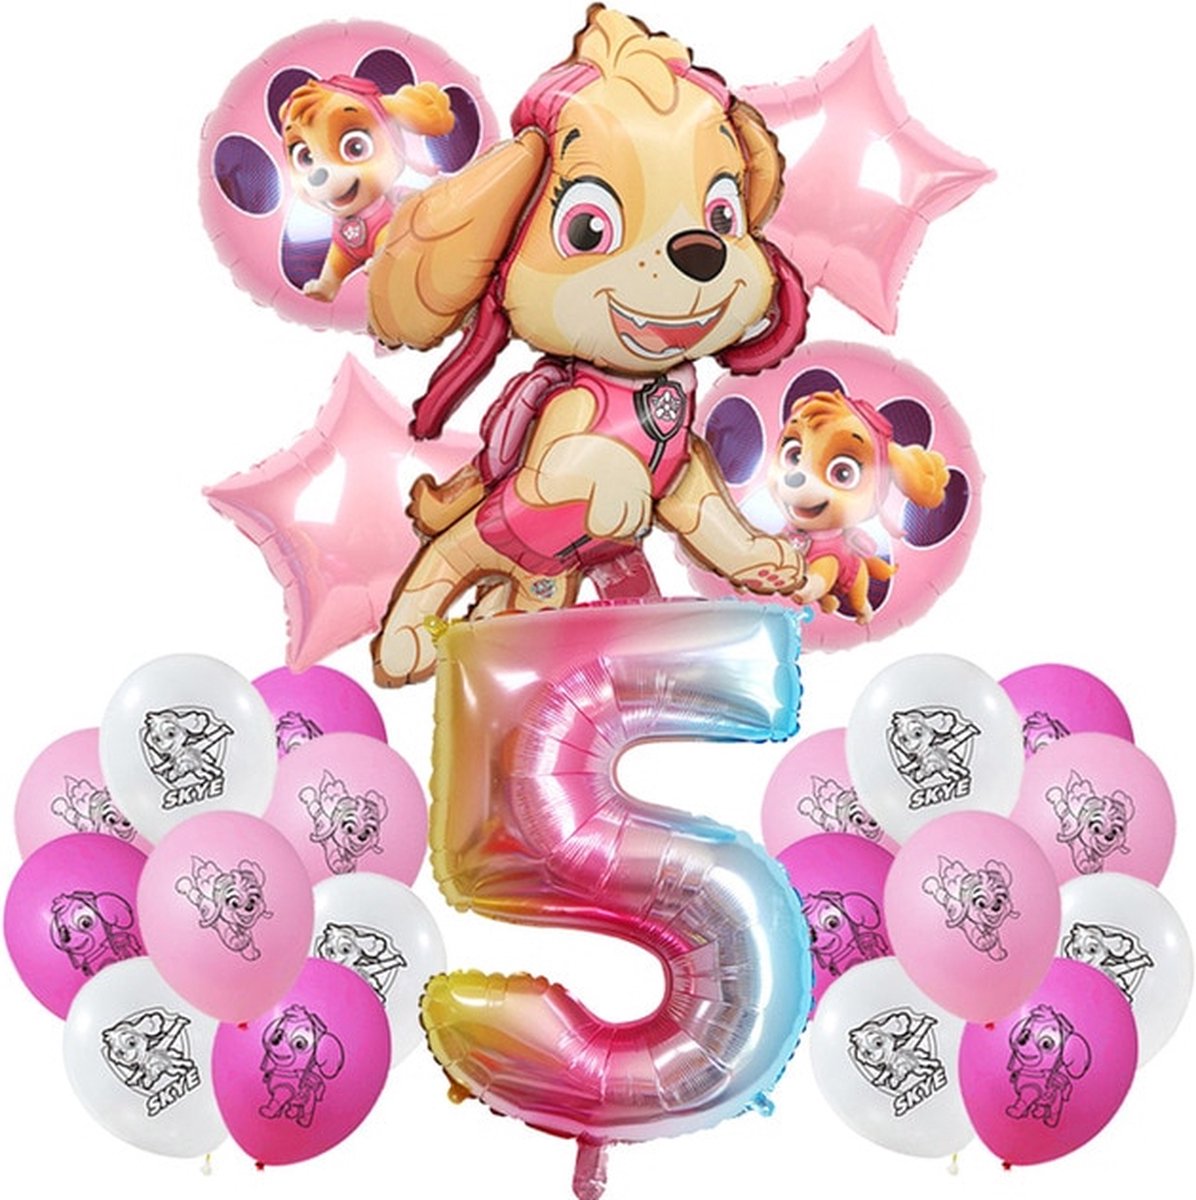 Paw Patrol Verjaardag Versiering- Paw Patrol Balonnen- PawPatrol Roze Verjaardagfeest- Paw Patrol Pink Balloons- Birthday Decoration- Heliumballonnen Paw Patrol- Themafeest- Versiering Verjaardag Meisje Roze- Verjaardagversiering- Kinderfeestje